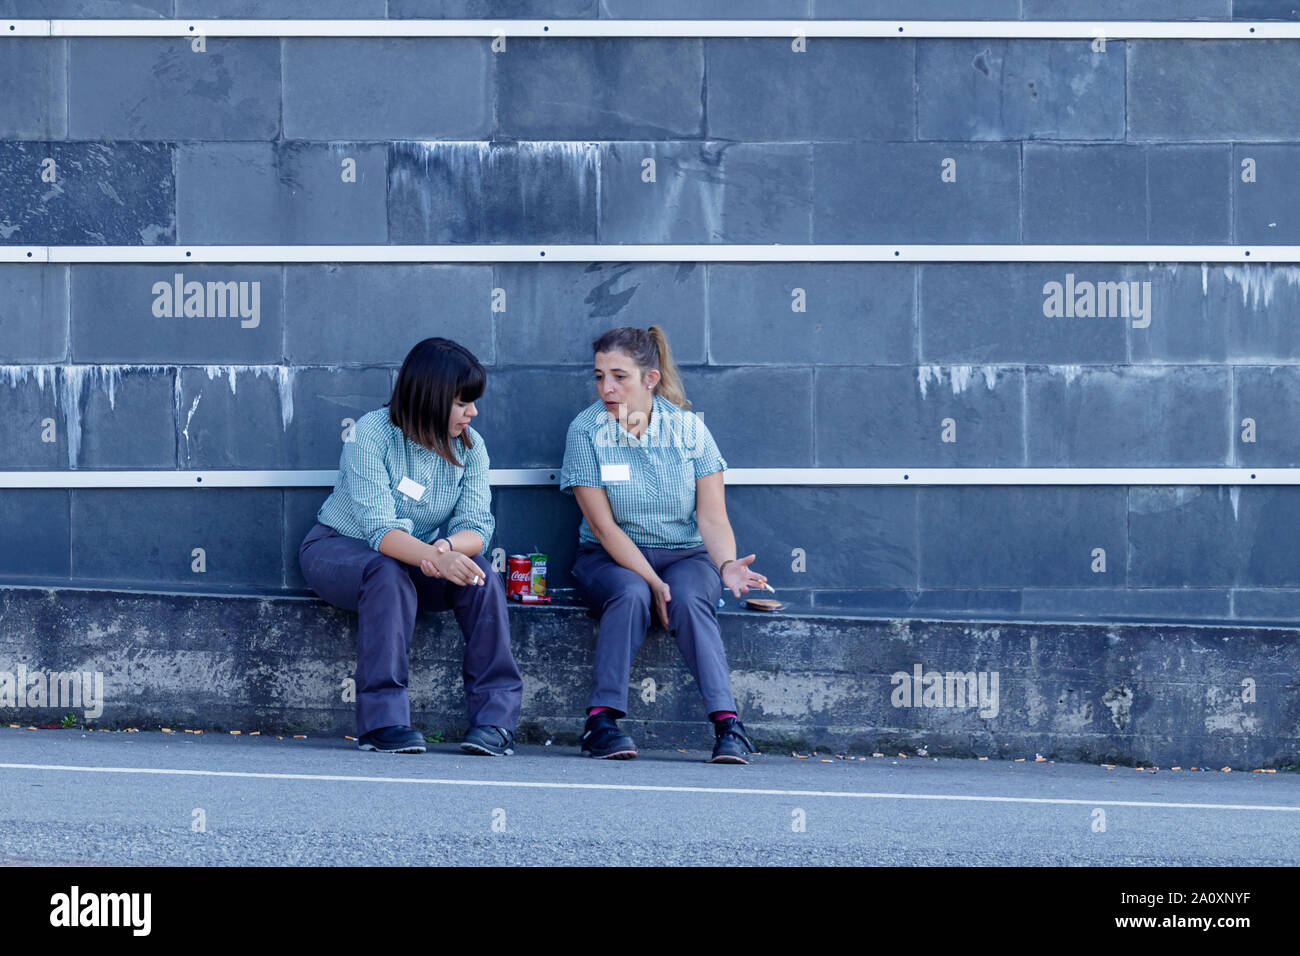 Coruna/Spanien - 22. August 2019: Zwei Frauen auf eine Zigarettenpause außerhalb einen Supermarkt in Coruna Spanien Stockfoto